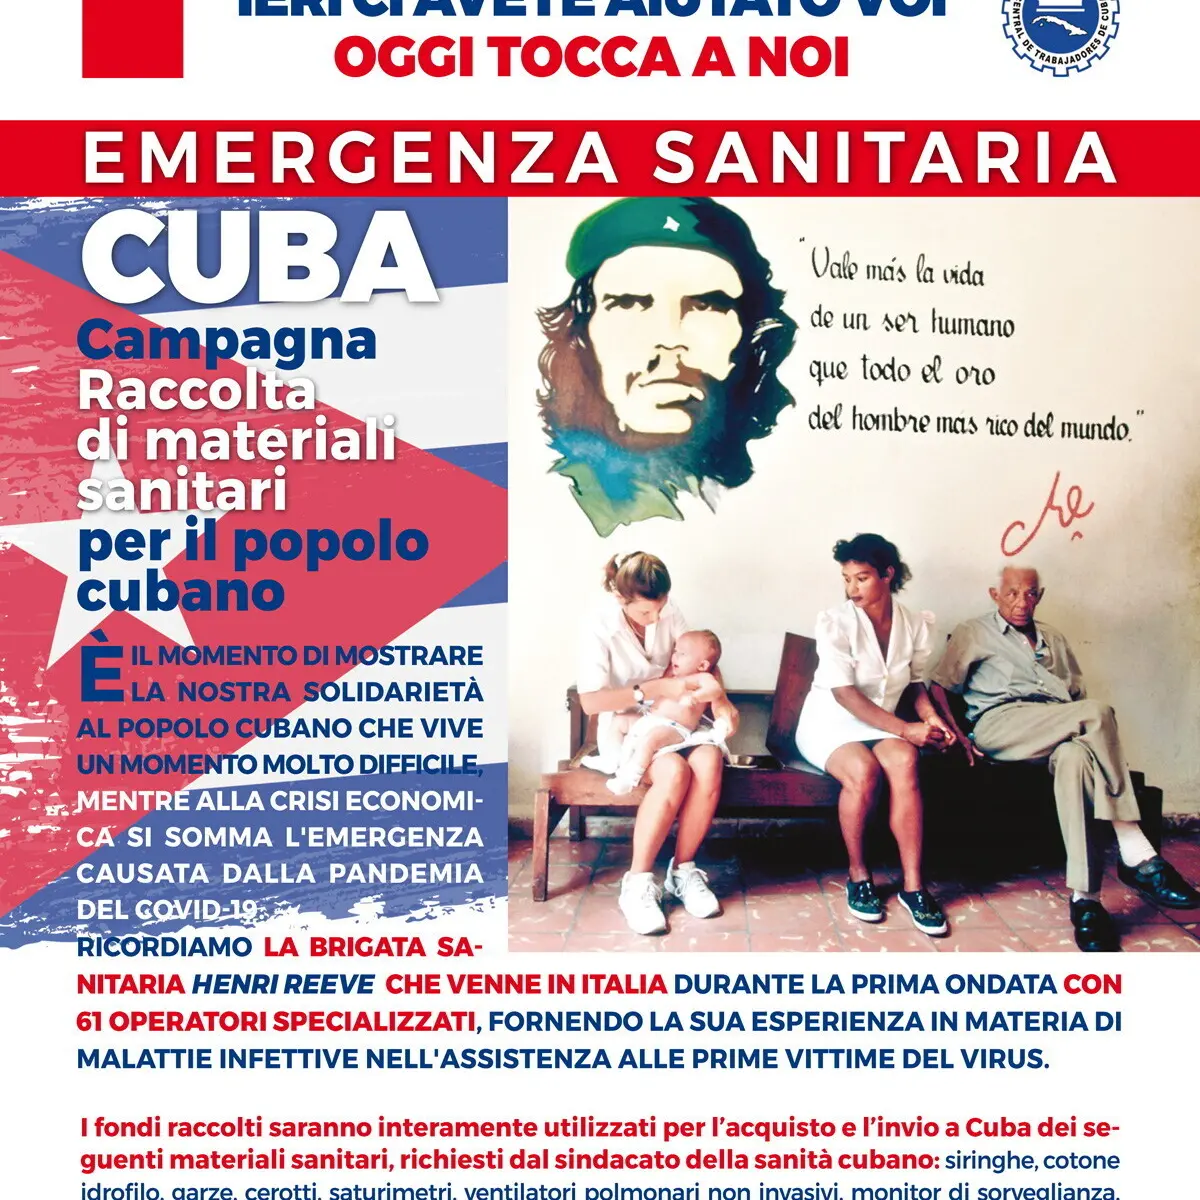 Al via campagna di solidarietà per Cuba